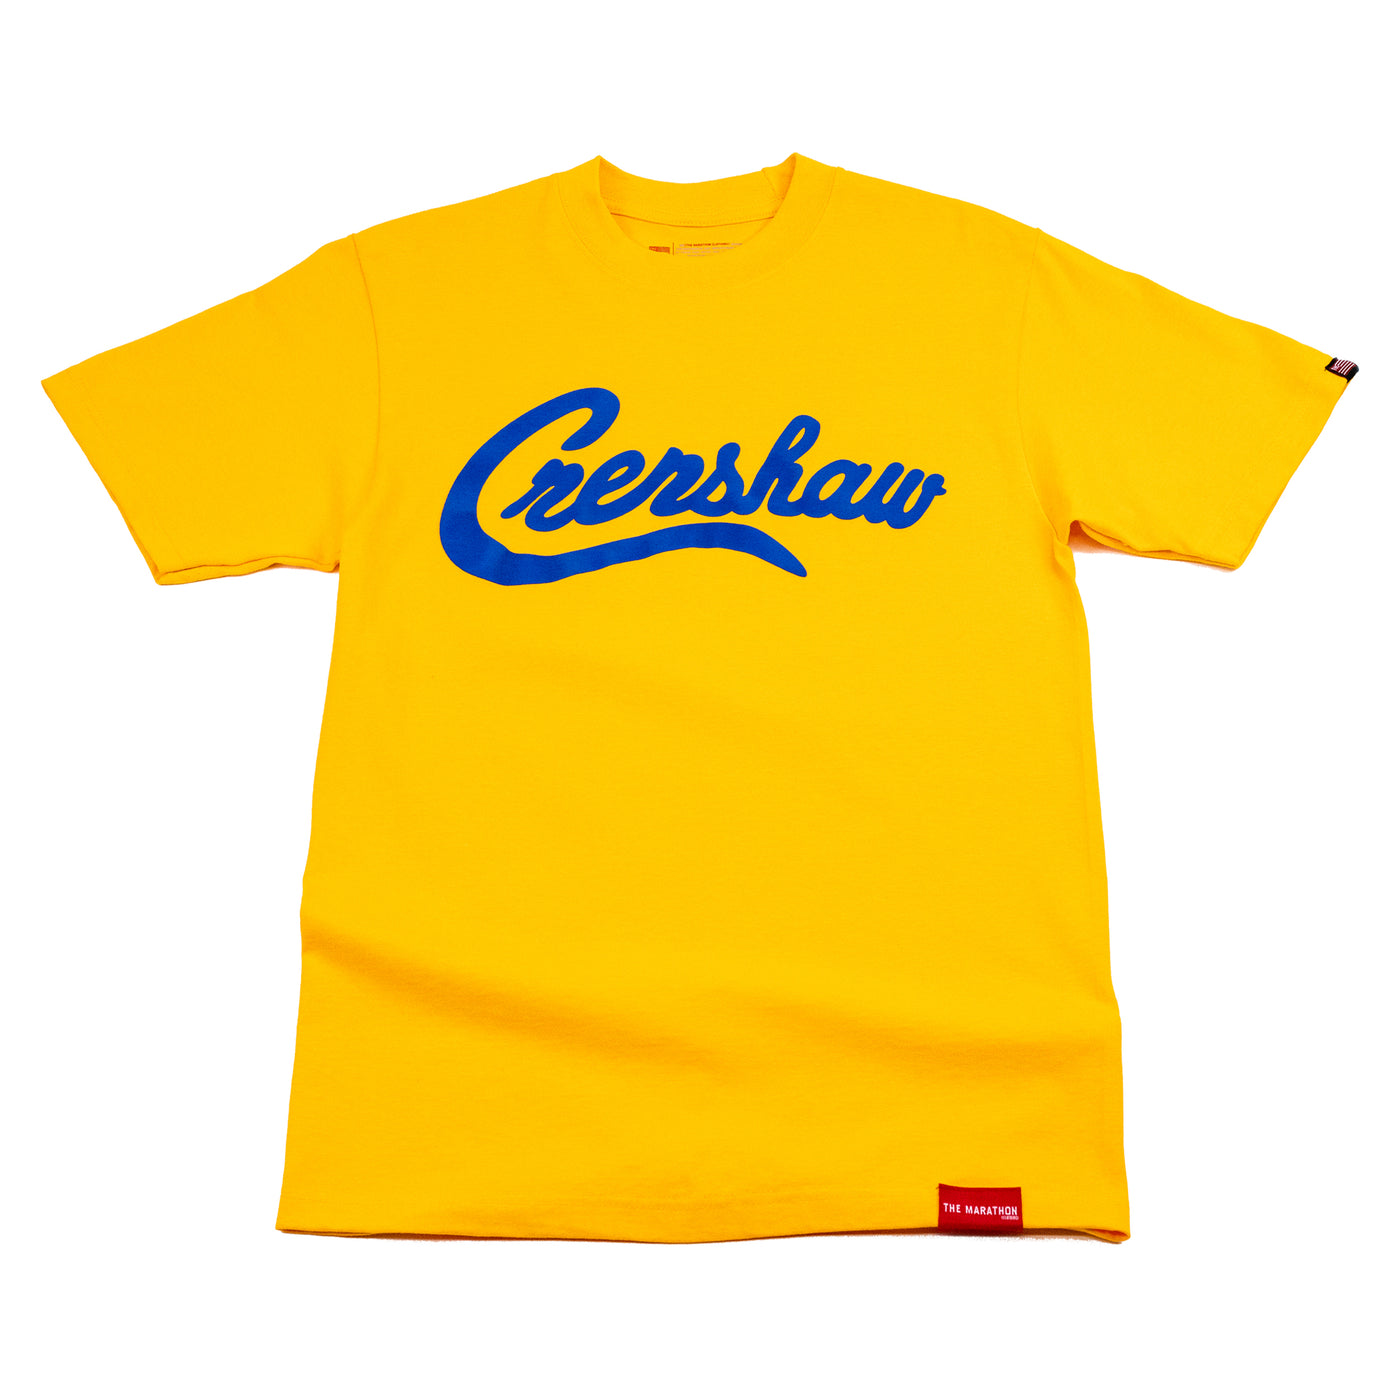 Crenshaw T-Shirt - Gold/Royal - Front